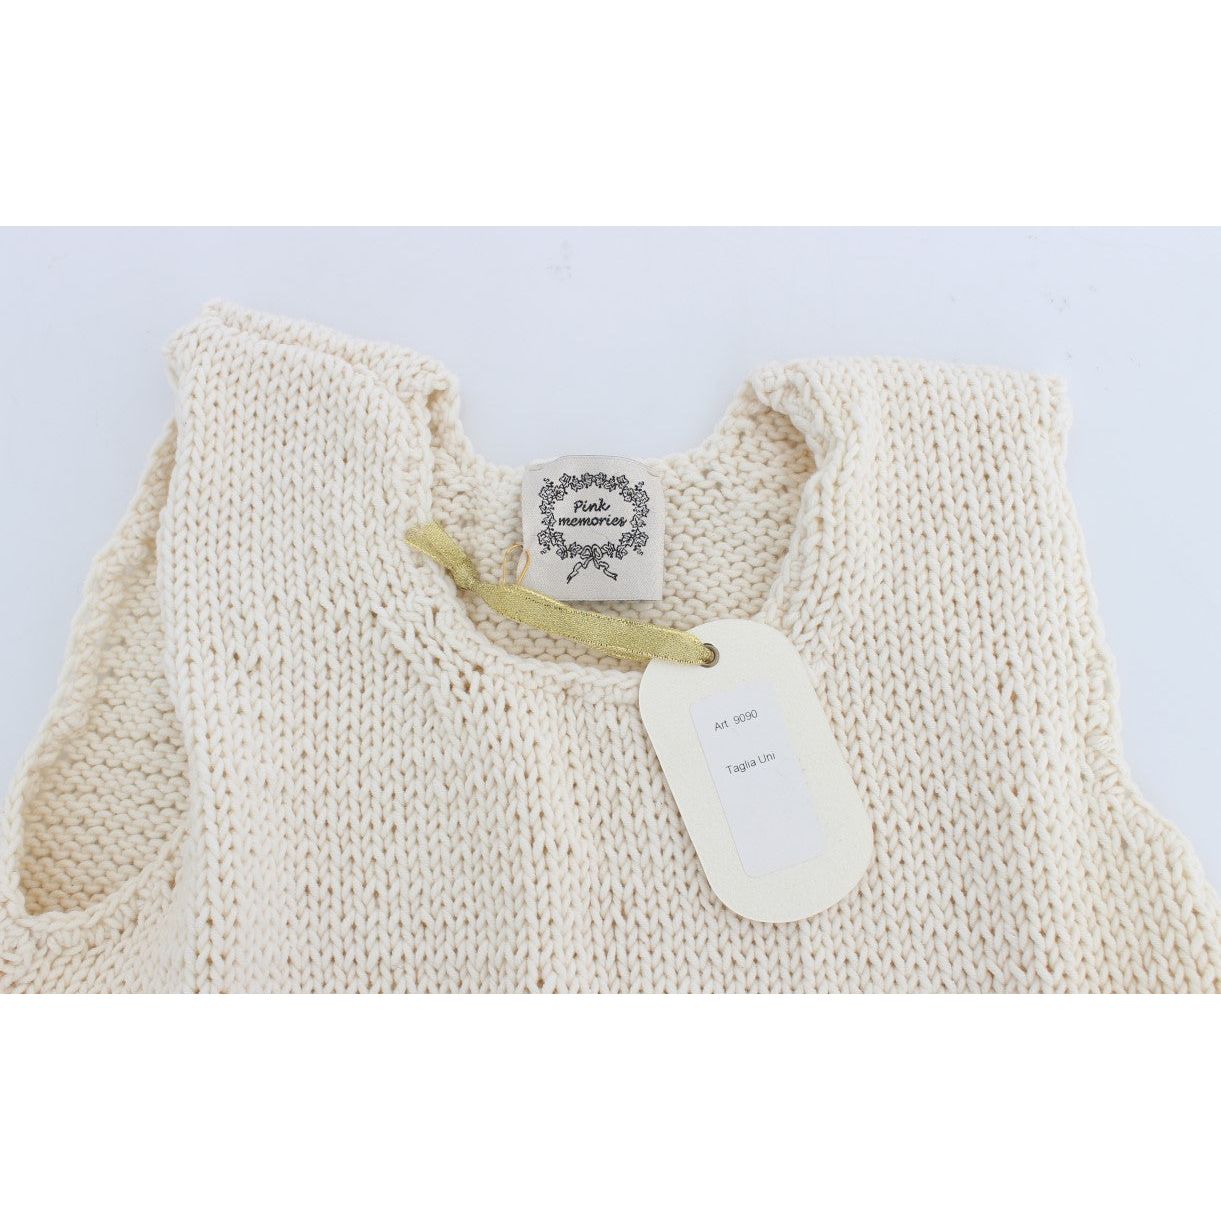 PINK MEMORIES Beige Sleeveless Cotton Blend Vest Sweater beige-cotton-blend-knitted-sleeveless-sweater 179236-beige-cotton-blend-knitted-sleeveless-sweater-4.jpg